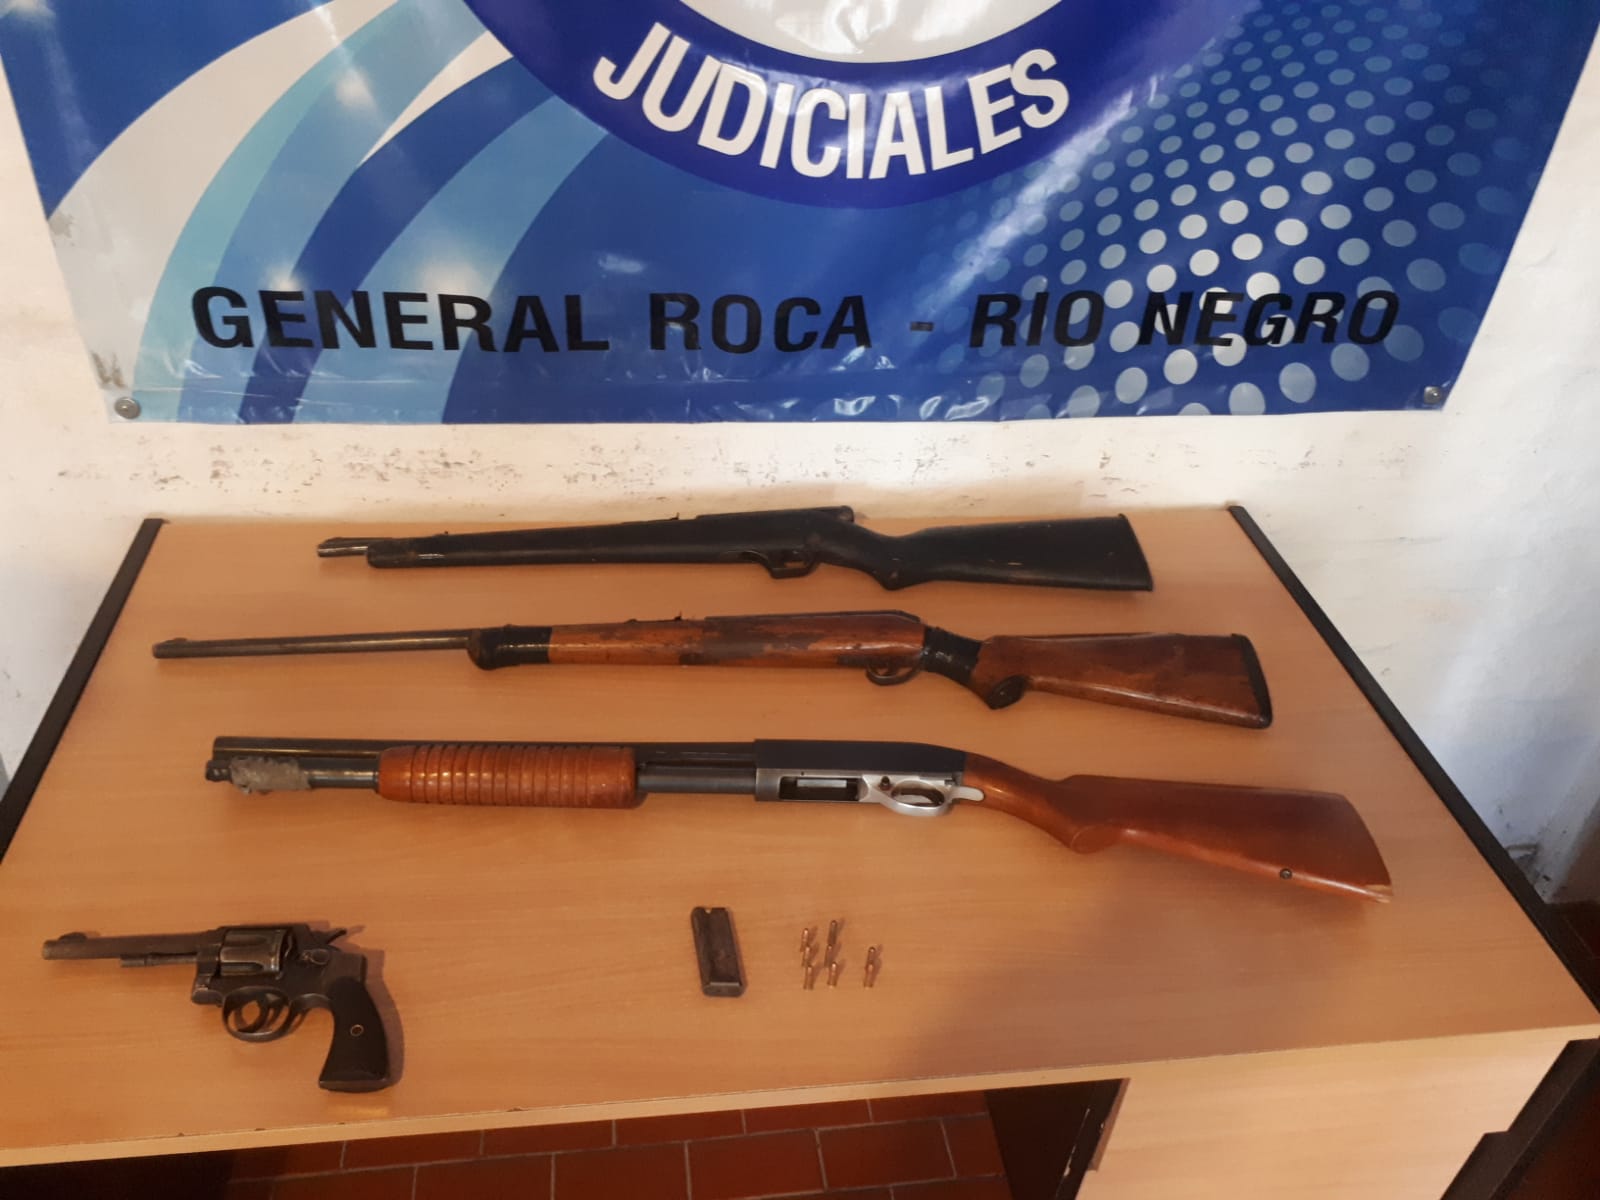 Las armas fueron secuestradas en medio de un operativo realizado entre J.J. Gómez y Guerrico. (foto: gentileza)